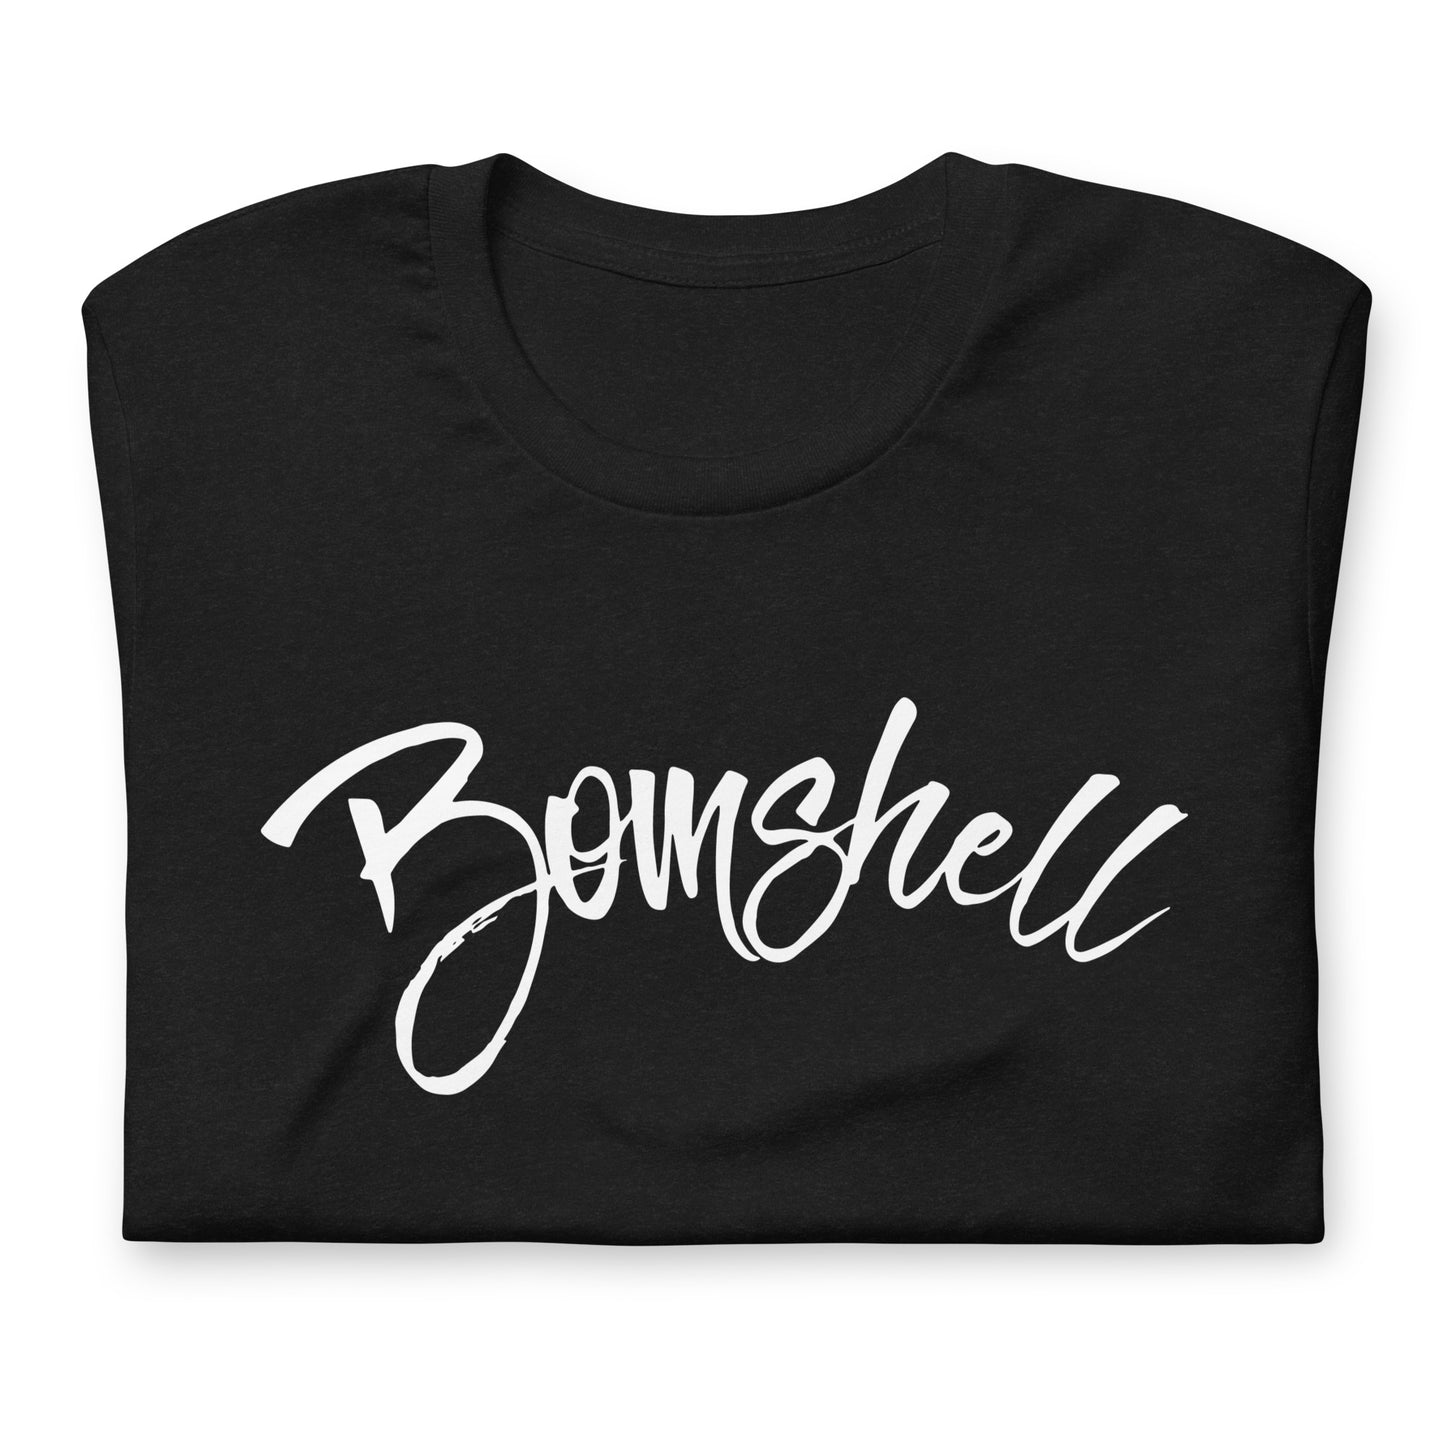 Bomshell Unisex T-shirt